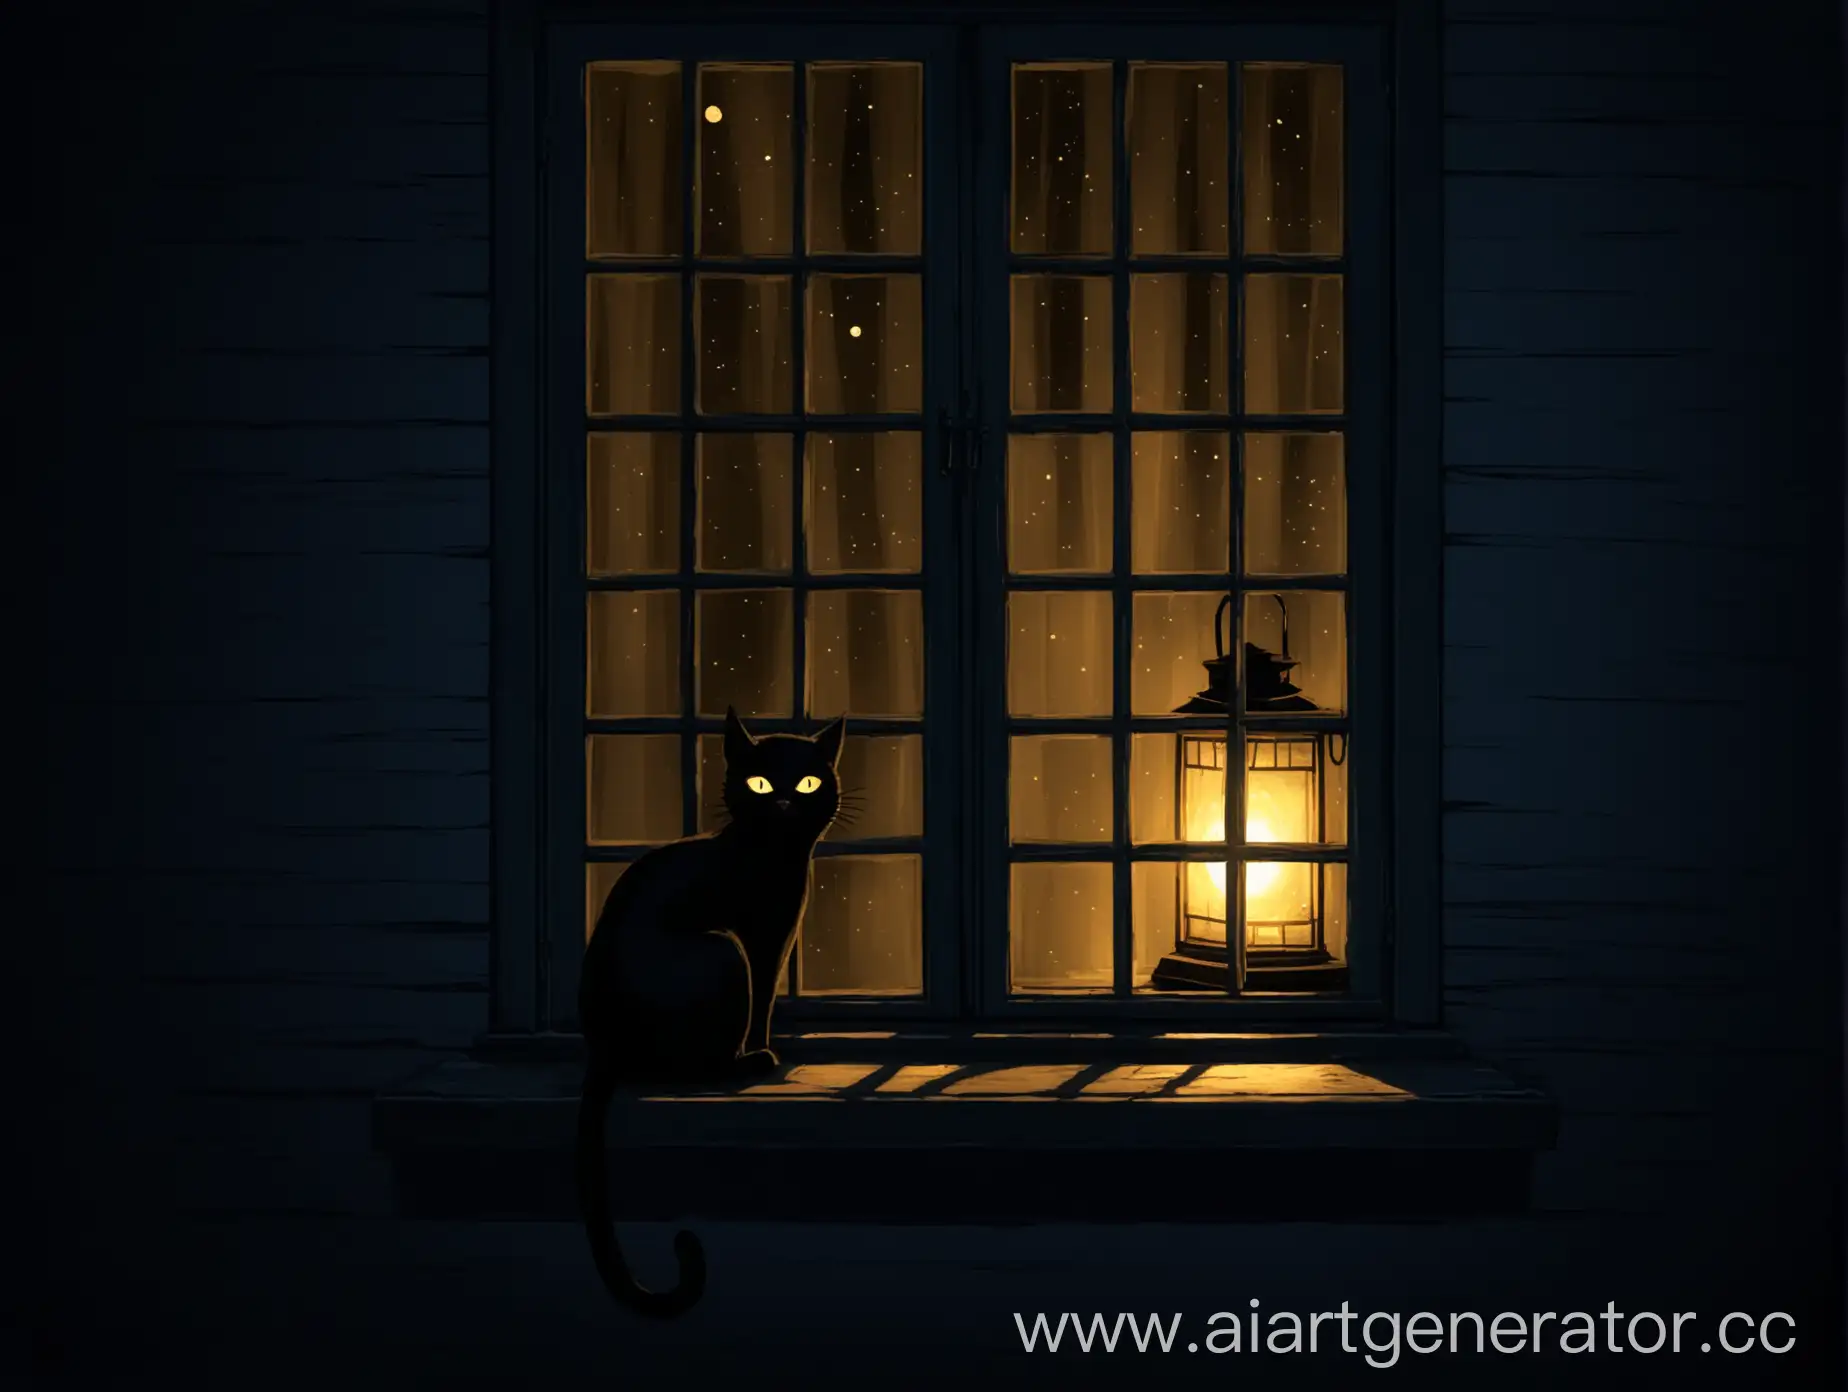 Черная кошка сидит на подоконнике, на улице ночь, свет от фонаря светит в темное помещение, что-то страшное лезет к окну